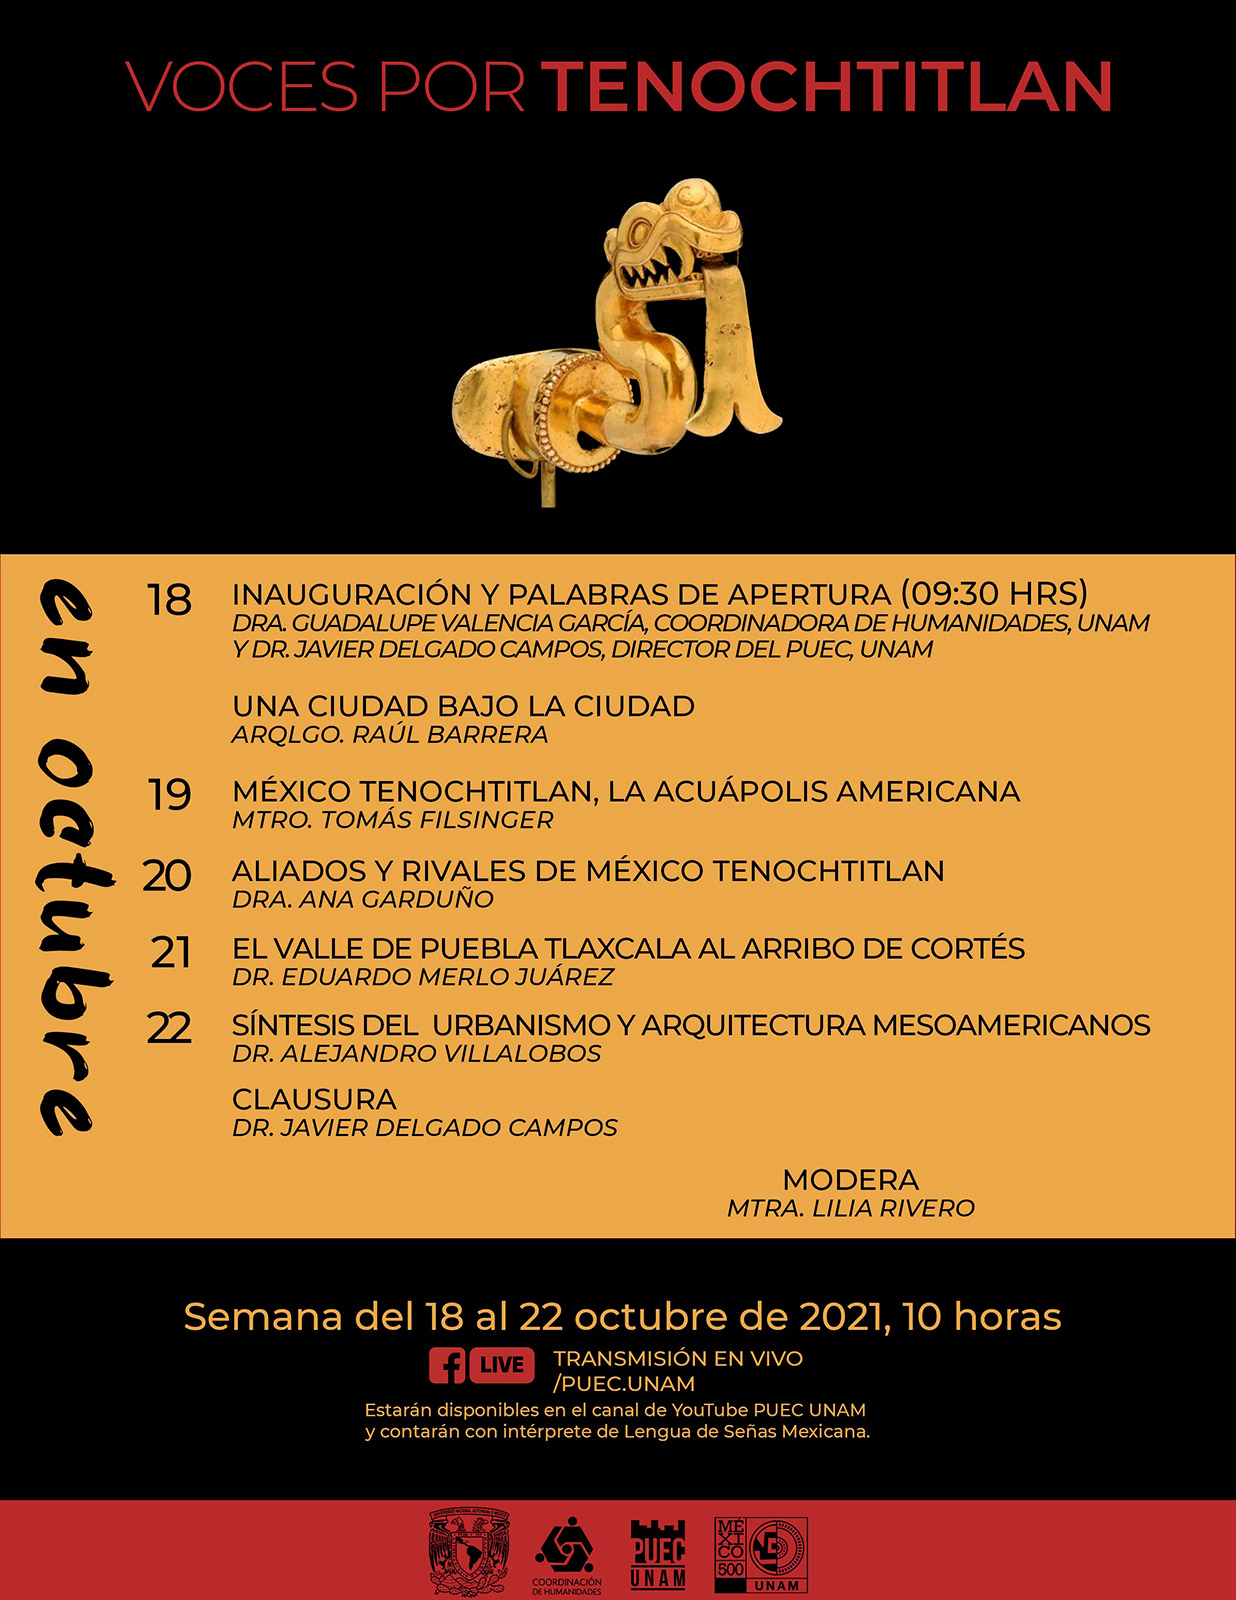 Voces por Tenochtitlan